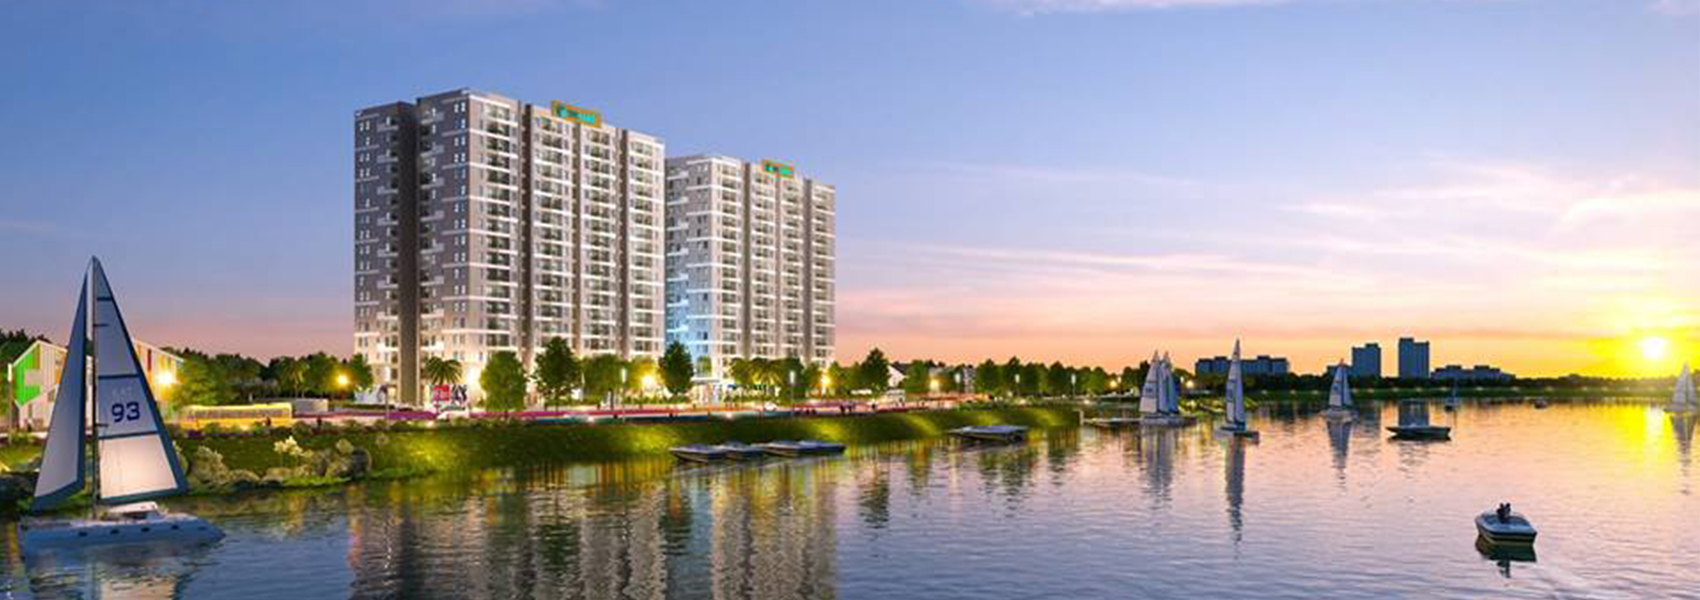 Dự án căn hộ chung cư Jamona Eco đường Huỳnh Bá Chánh quận 8 chủ đầu tư TTC Land